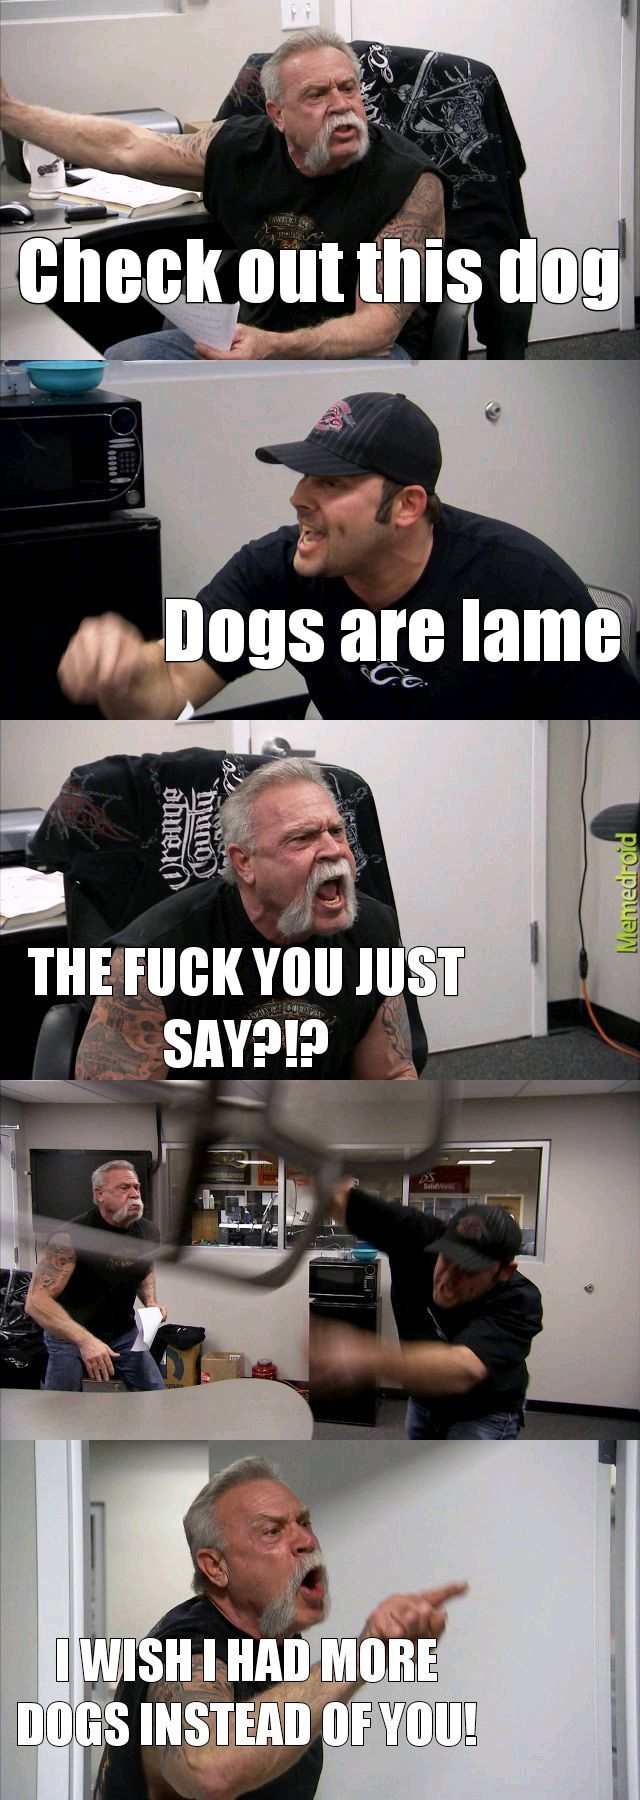 Doggos da best - meme